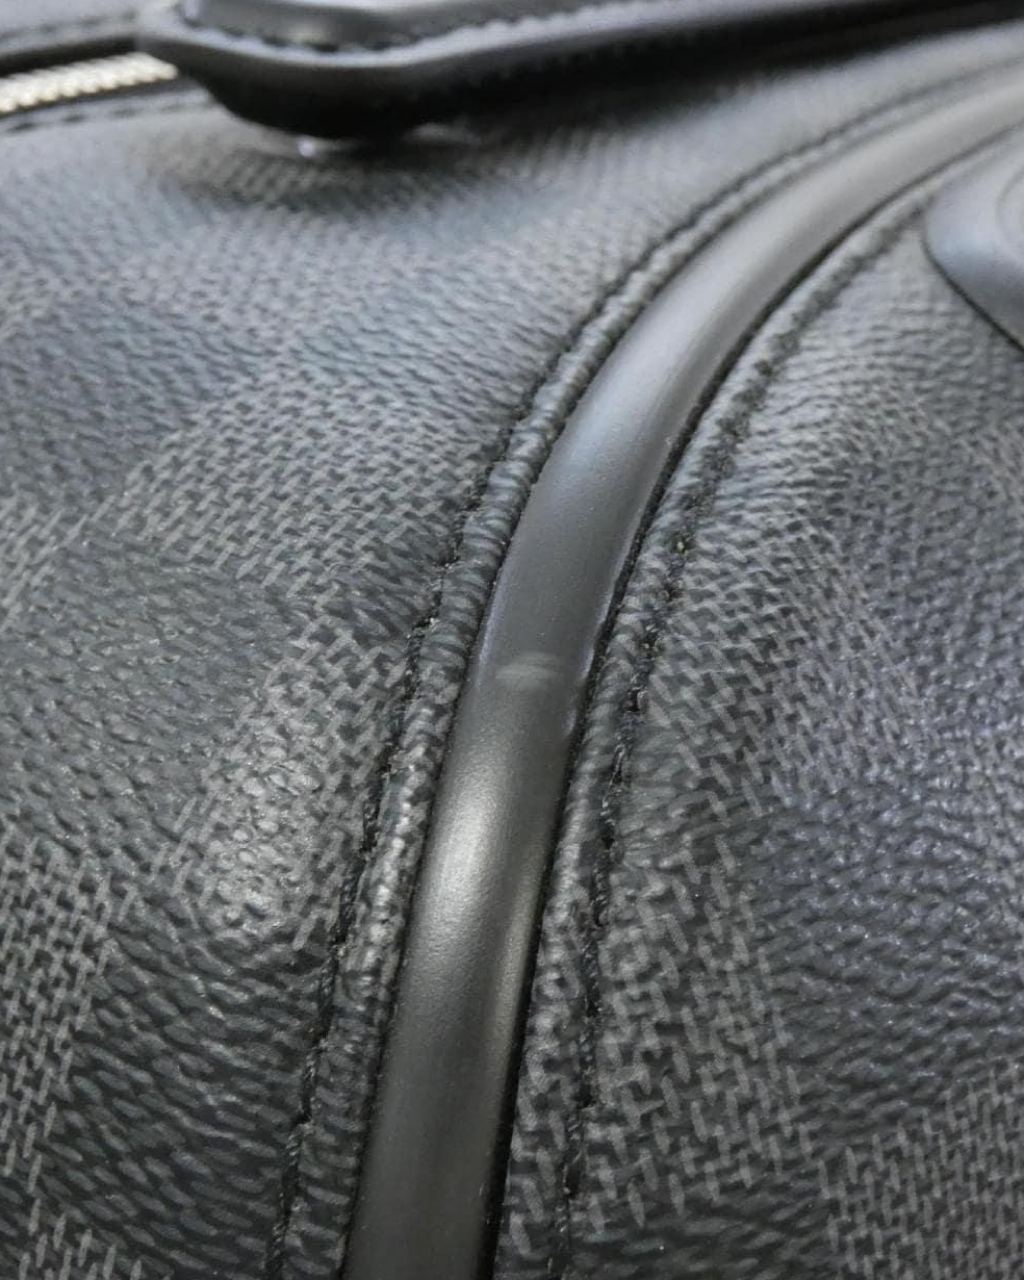 Louis Vuitton Zephyr suitcase